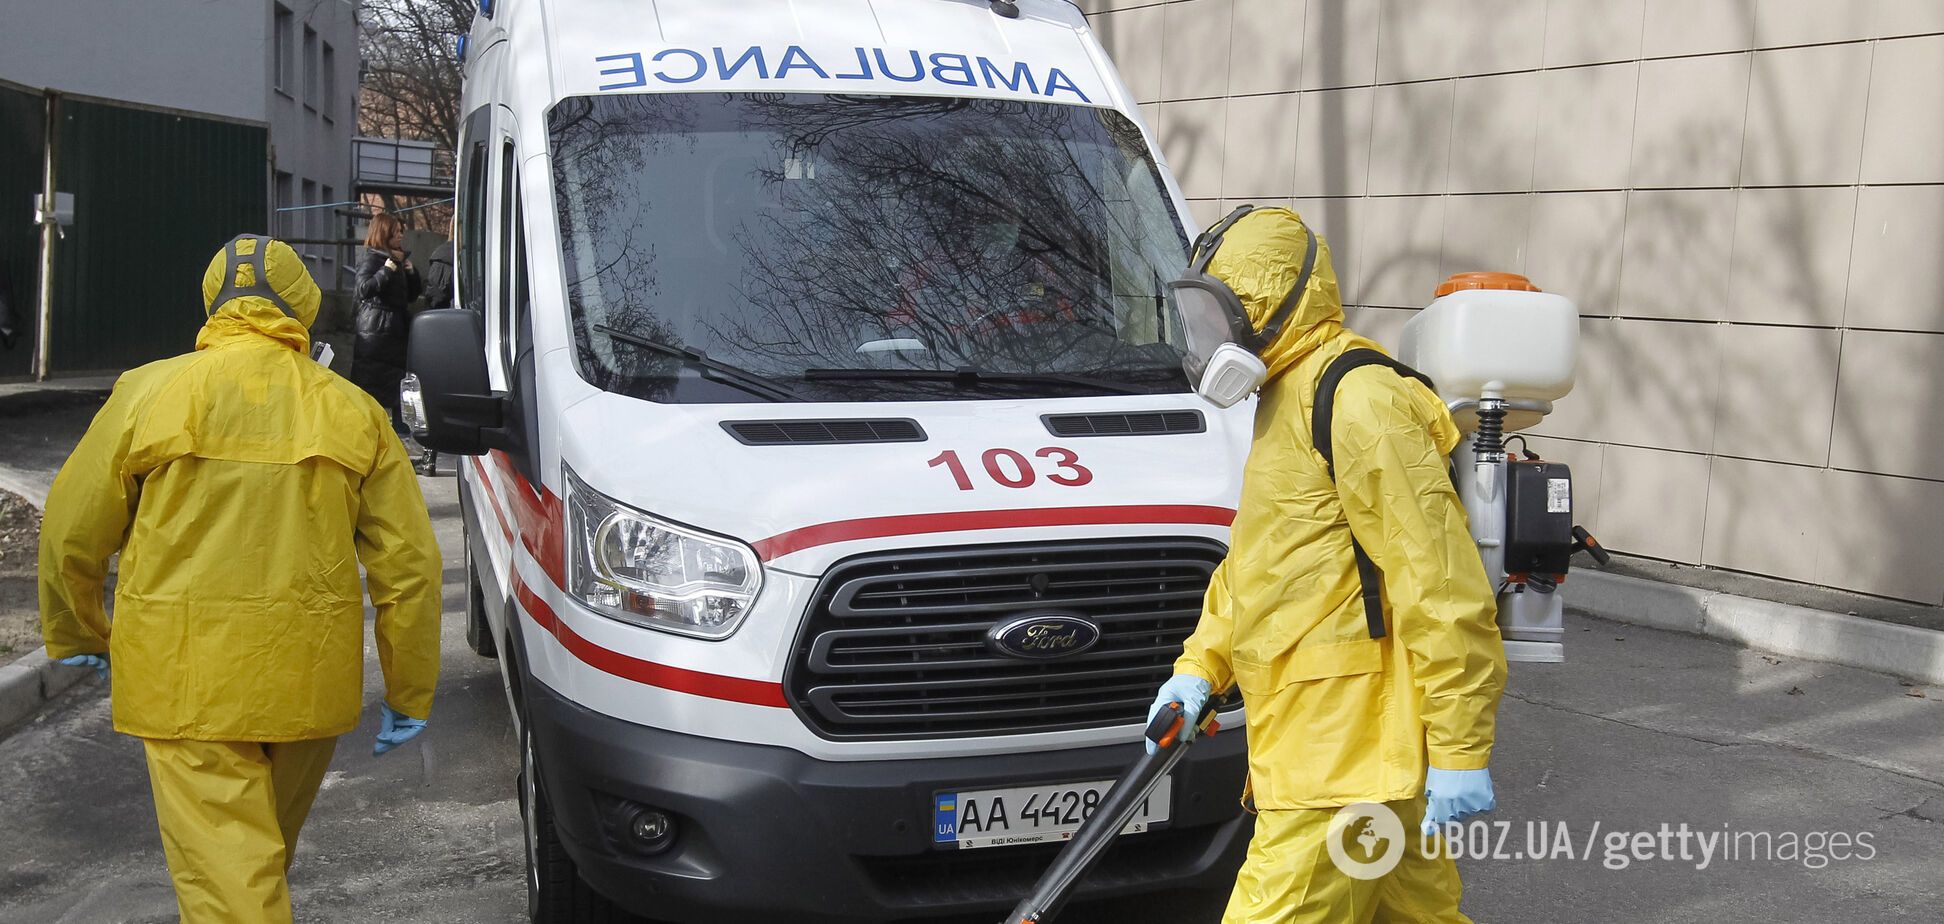 Третья жертва коронавируса в Украине: смертельный случай зафиксирован на Ивано-Франковщине